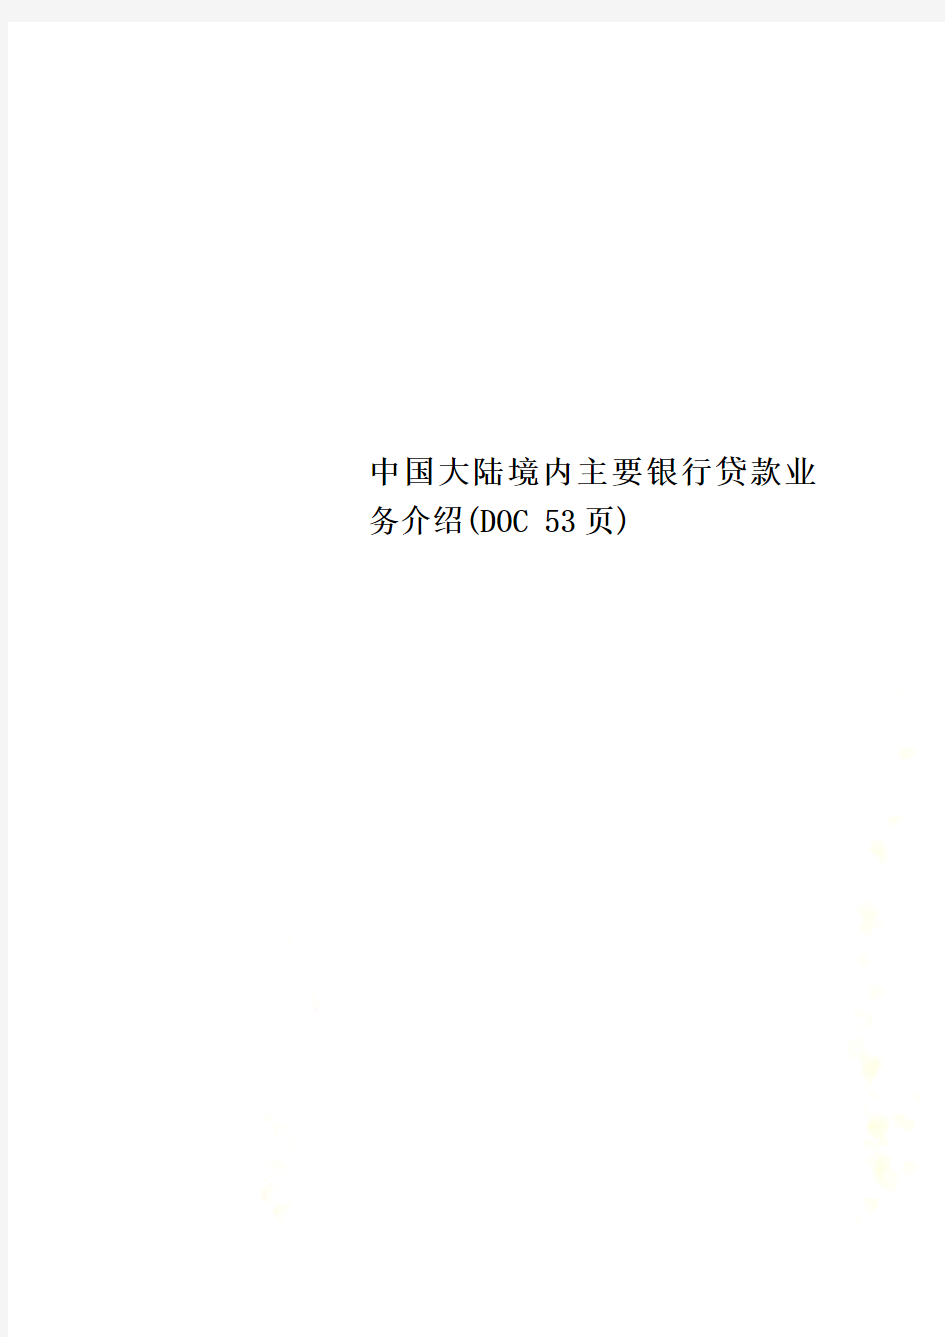 中国大陆境内主要银行贷款业务介绍(DOC 53页)